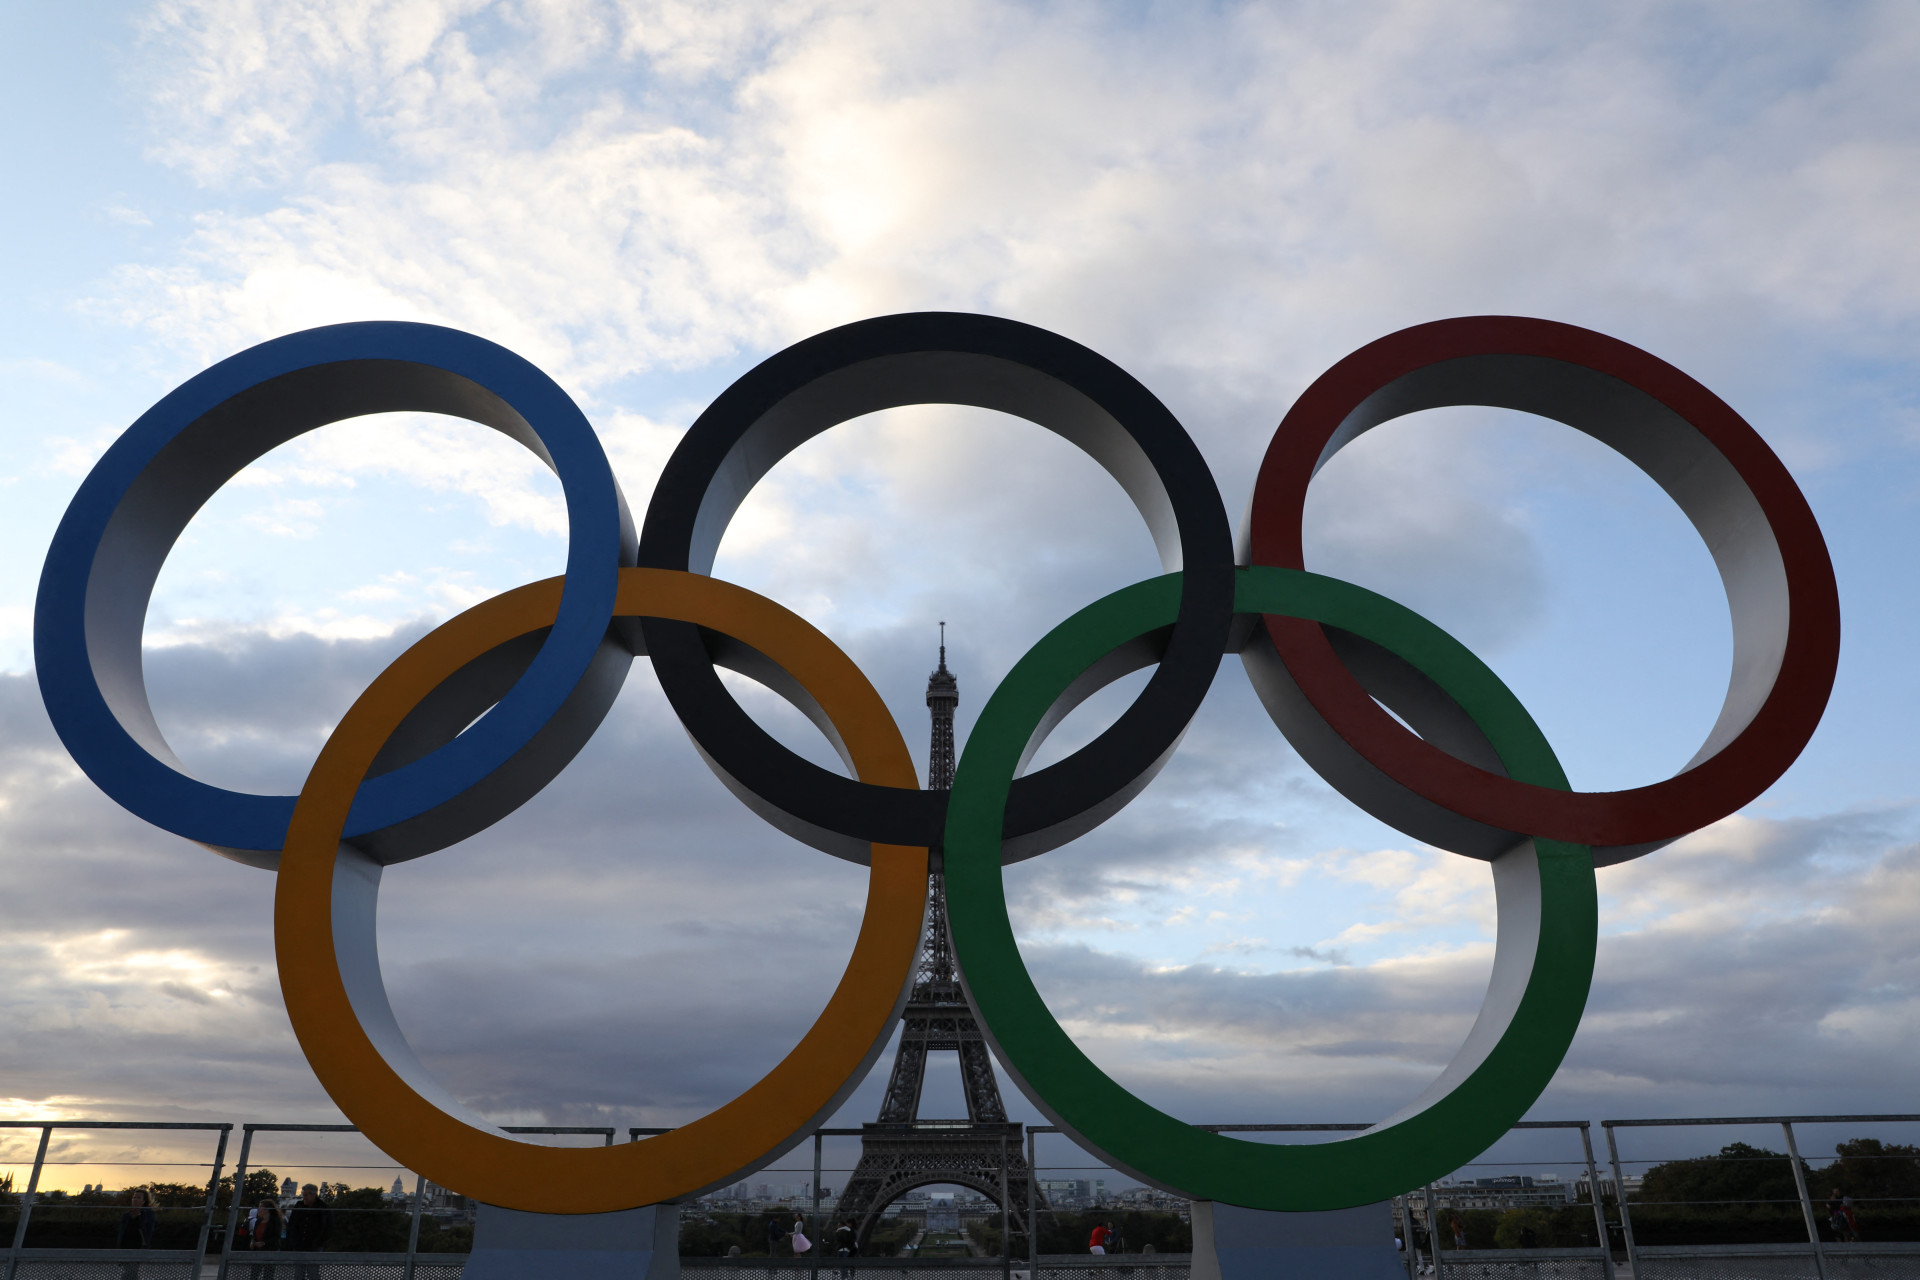 Anéis olímpicos em Paris, na França, sede das Olimpíadas de 2024, próximo à Torre Eiffel (Foto: LUDOVIC MARIN / AFP)